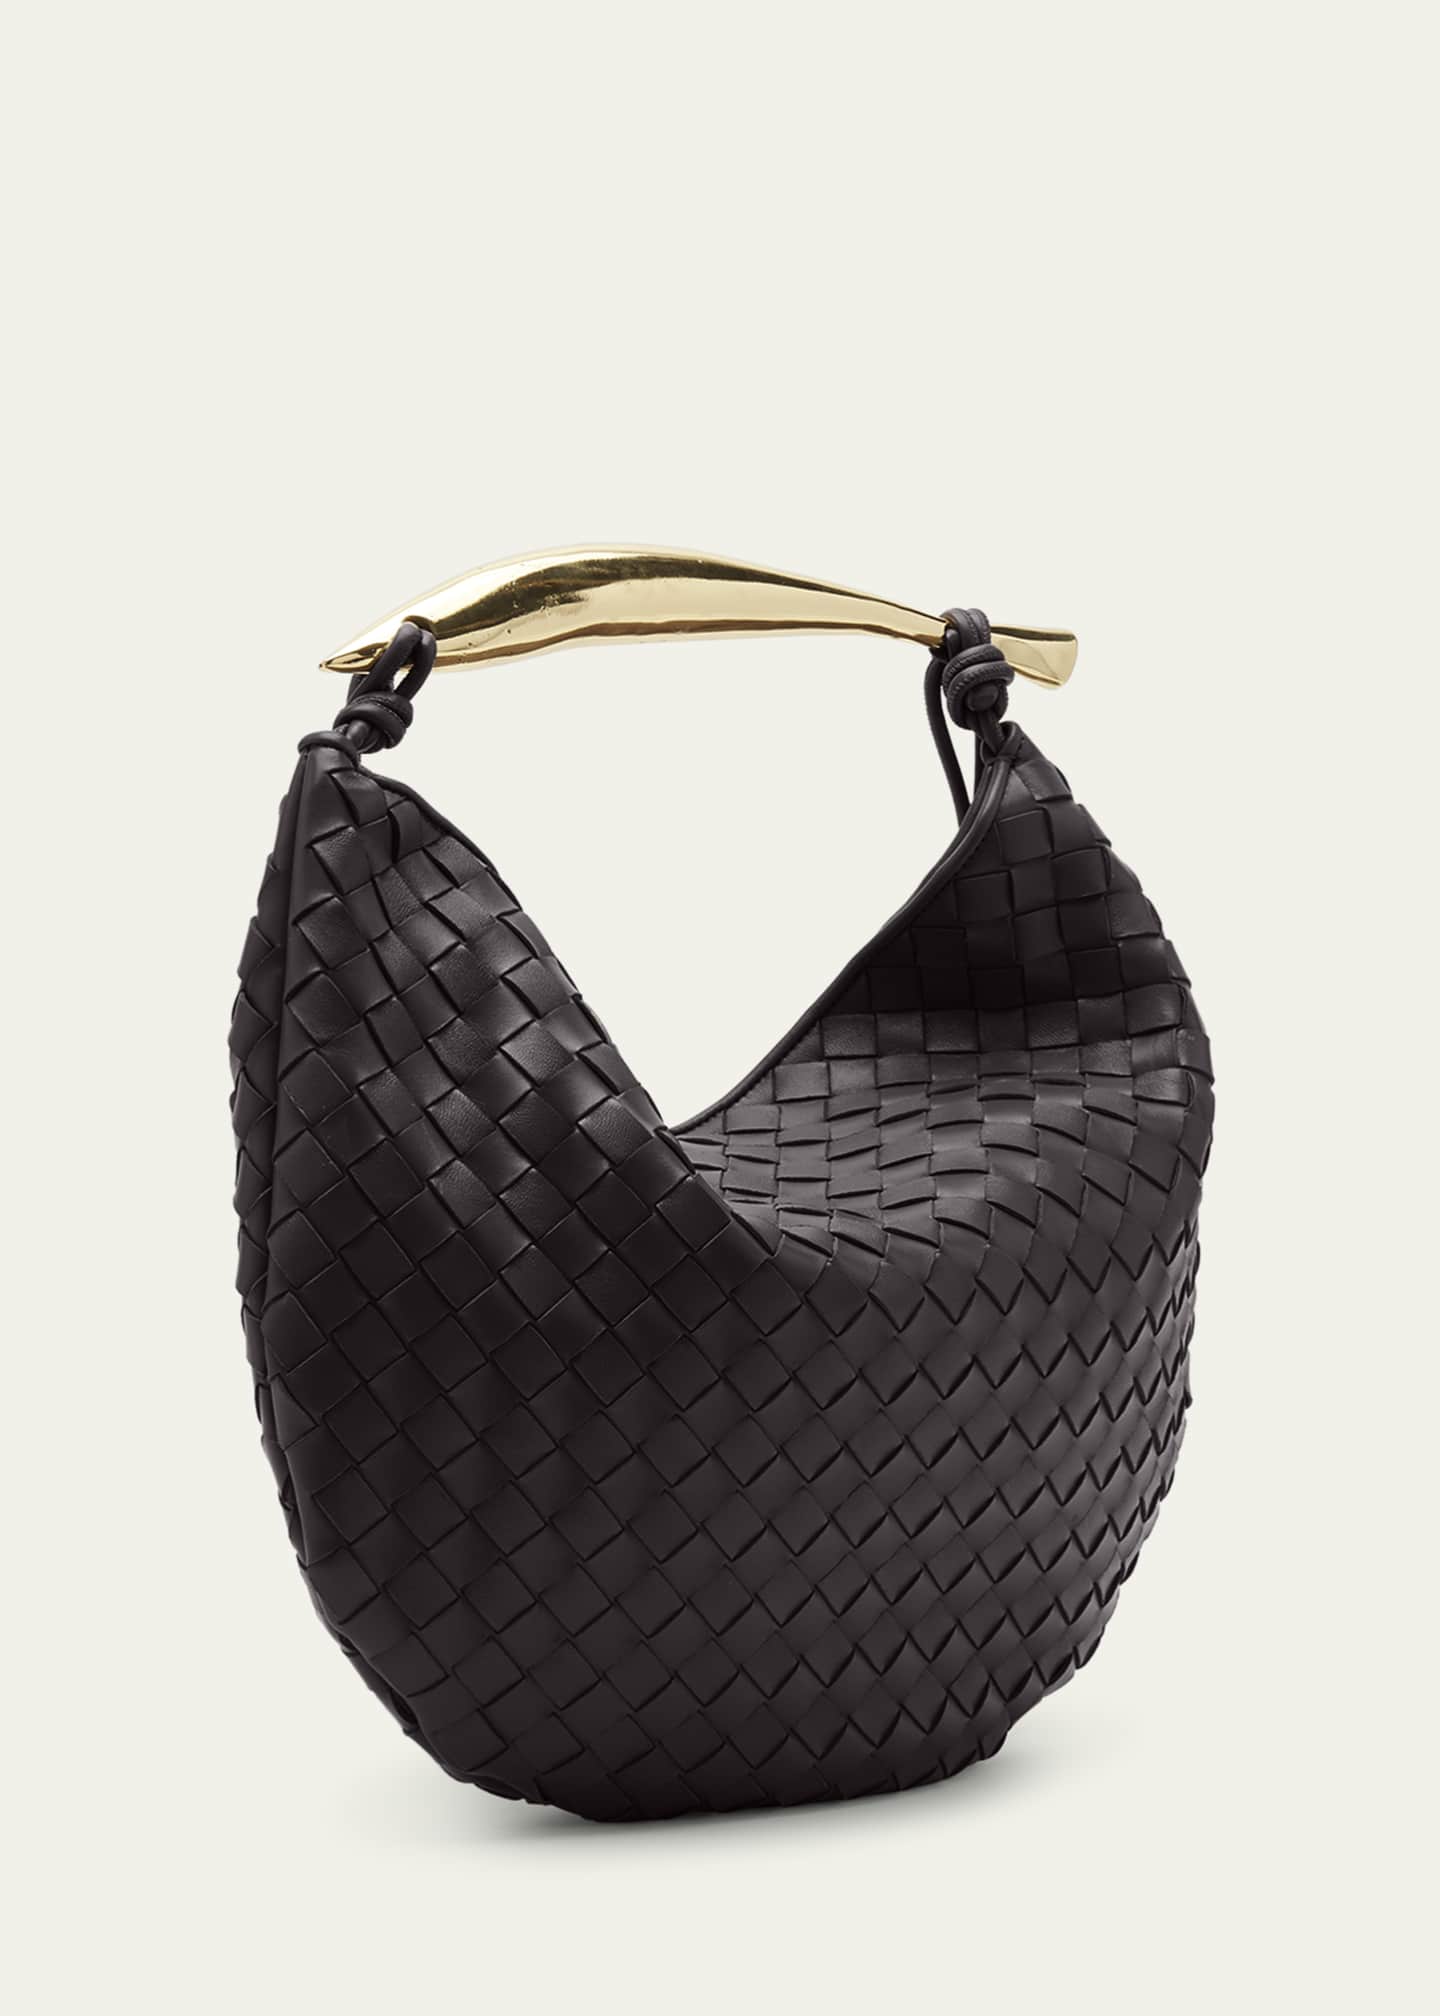 Bottega Veneta Sardine Intrecciato Leather Handbag